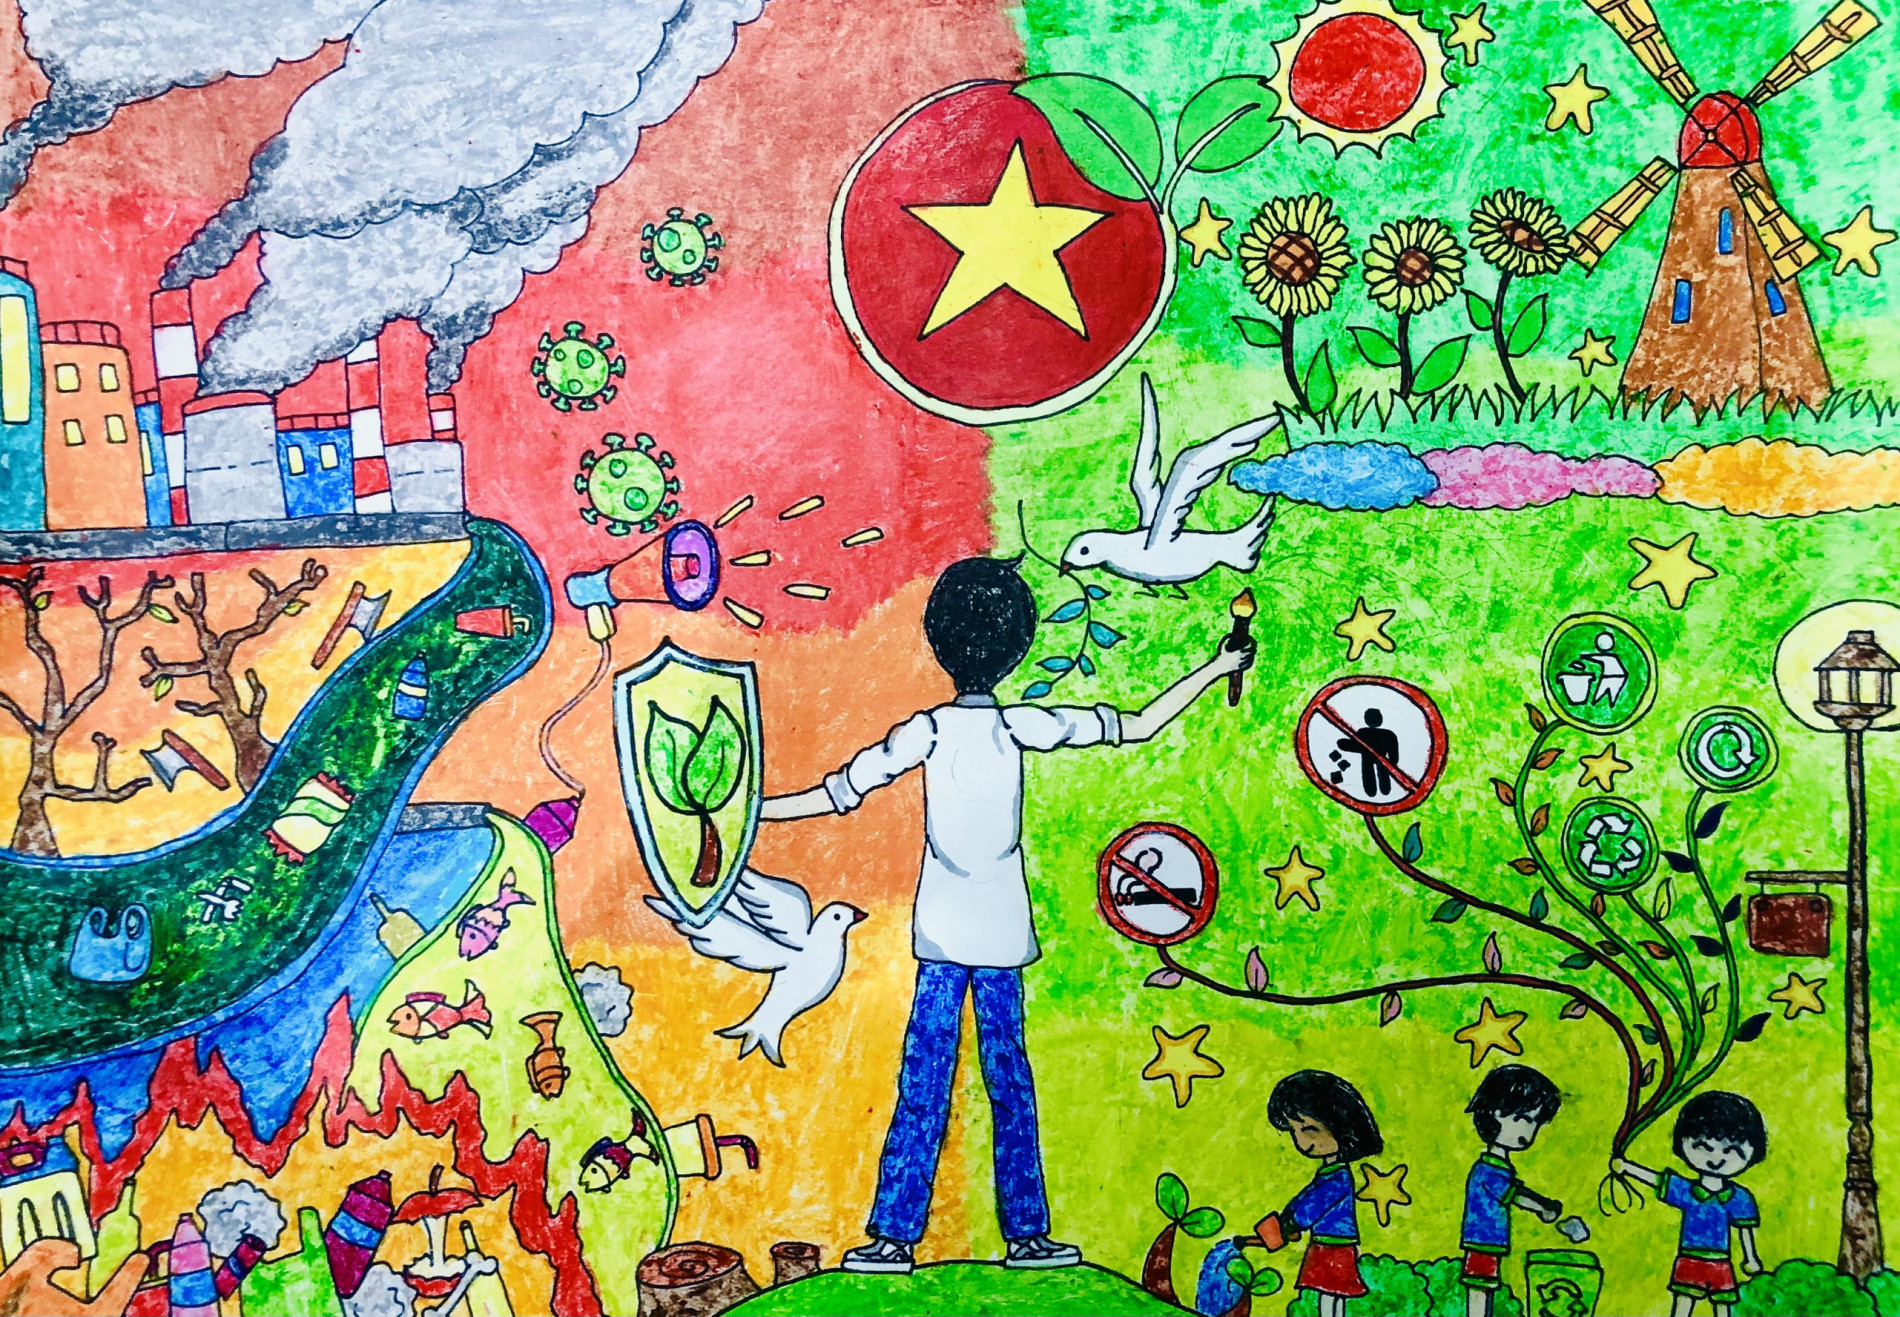 CTN TPHCM Vẽ tranh tường cổ động bảo vệ môi trường  Thiền Tôn Phật Quang